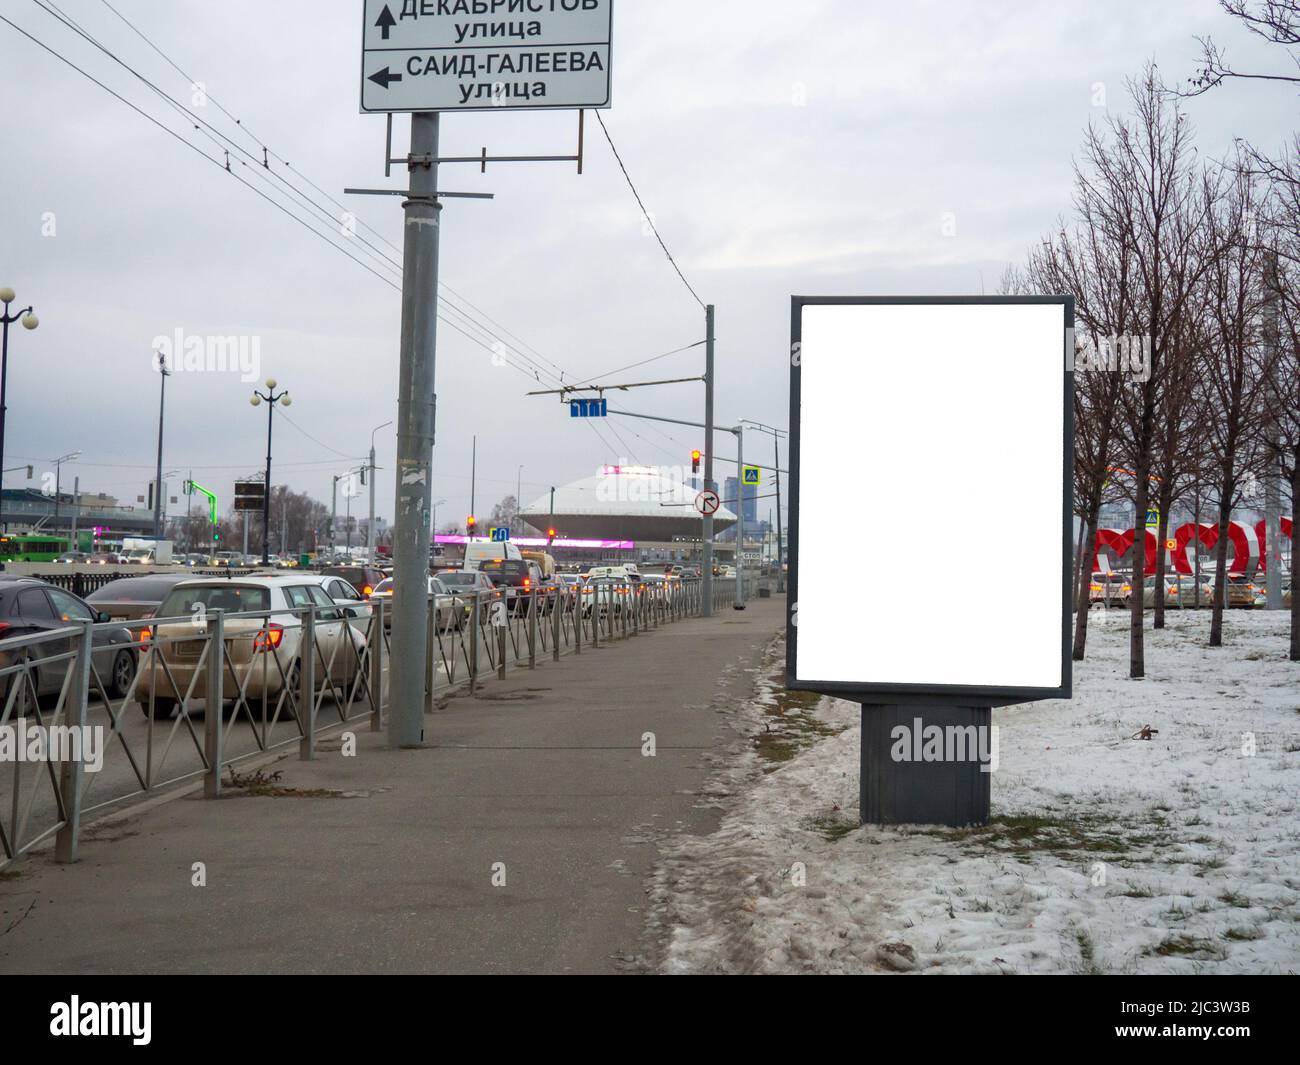 Cartellone pubblicitario vuoto. Spazio pubblicitario su una strada trafficata. Spazio vuoto bianco per riempire Mock-up. Foto Stock